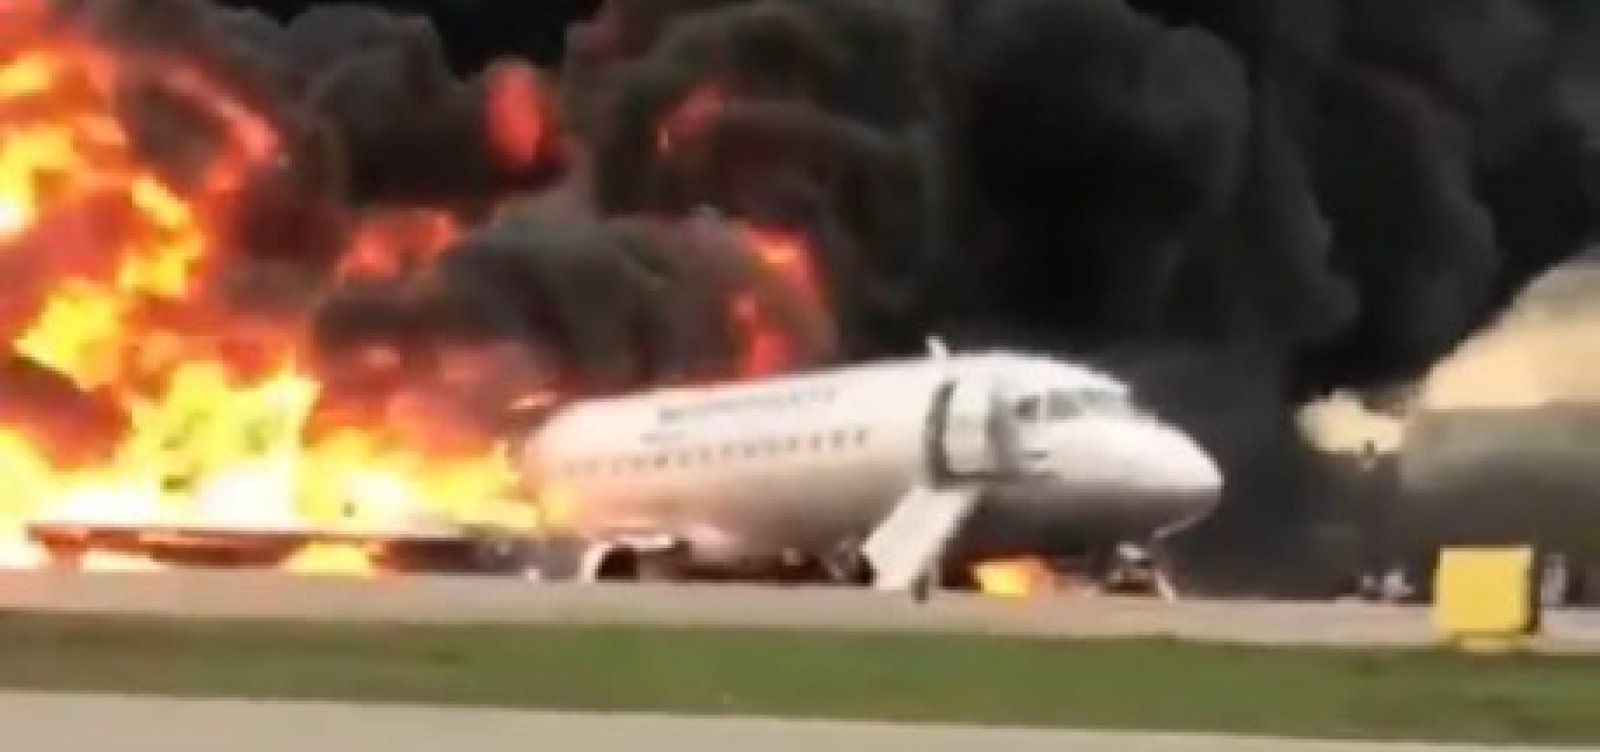 Incêndio em avião que fez pouso de emergência deixa 13 mortos na Rússia